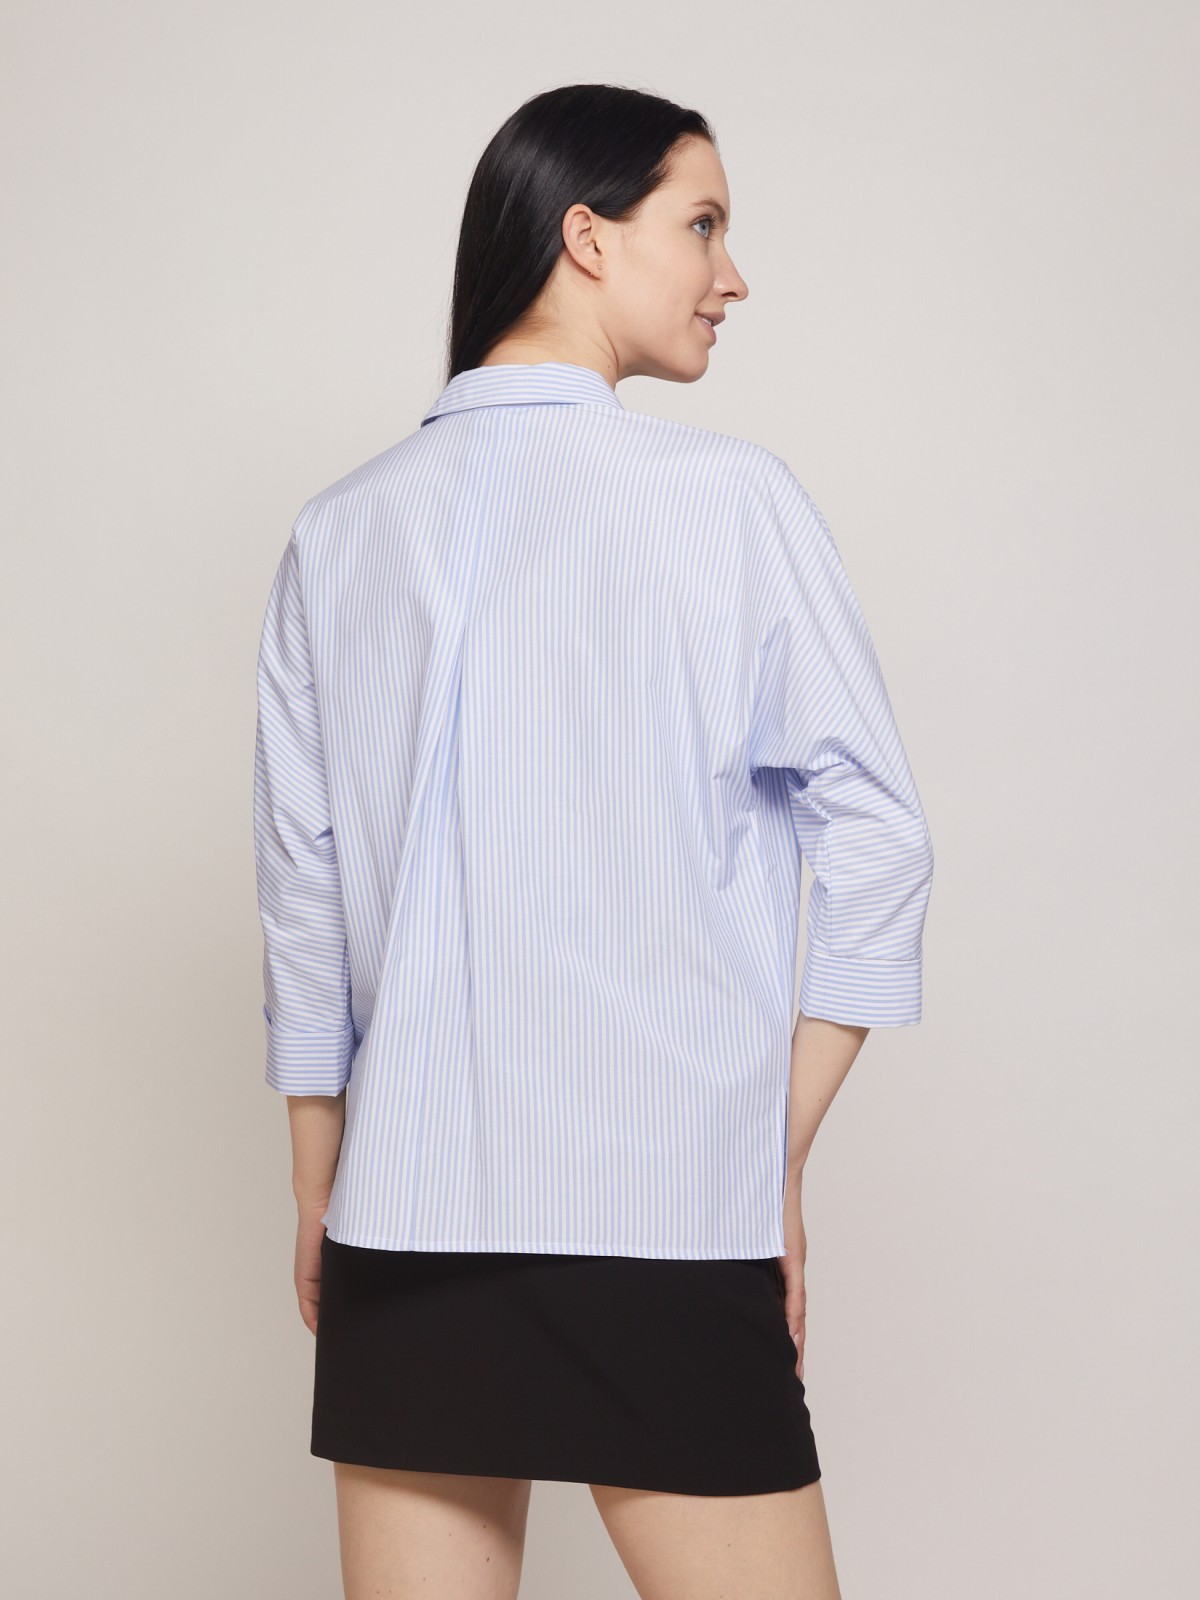 Рубашка в тонкую полоску zolla 221311159133, цвет светло-голубой, размер XS - фото 6